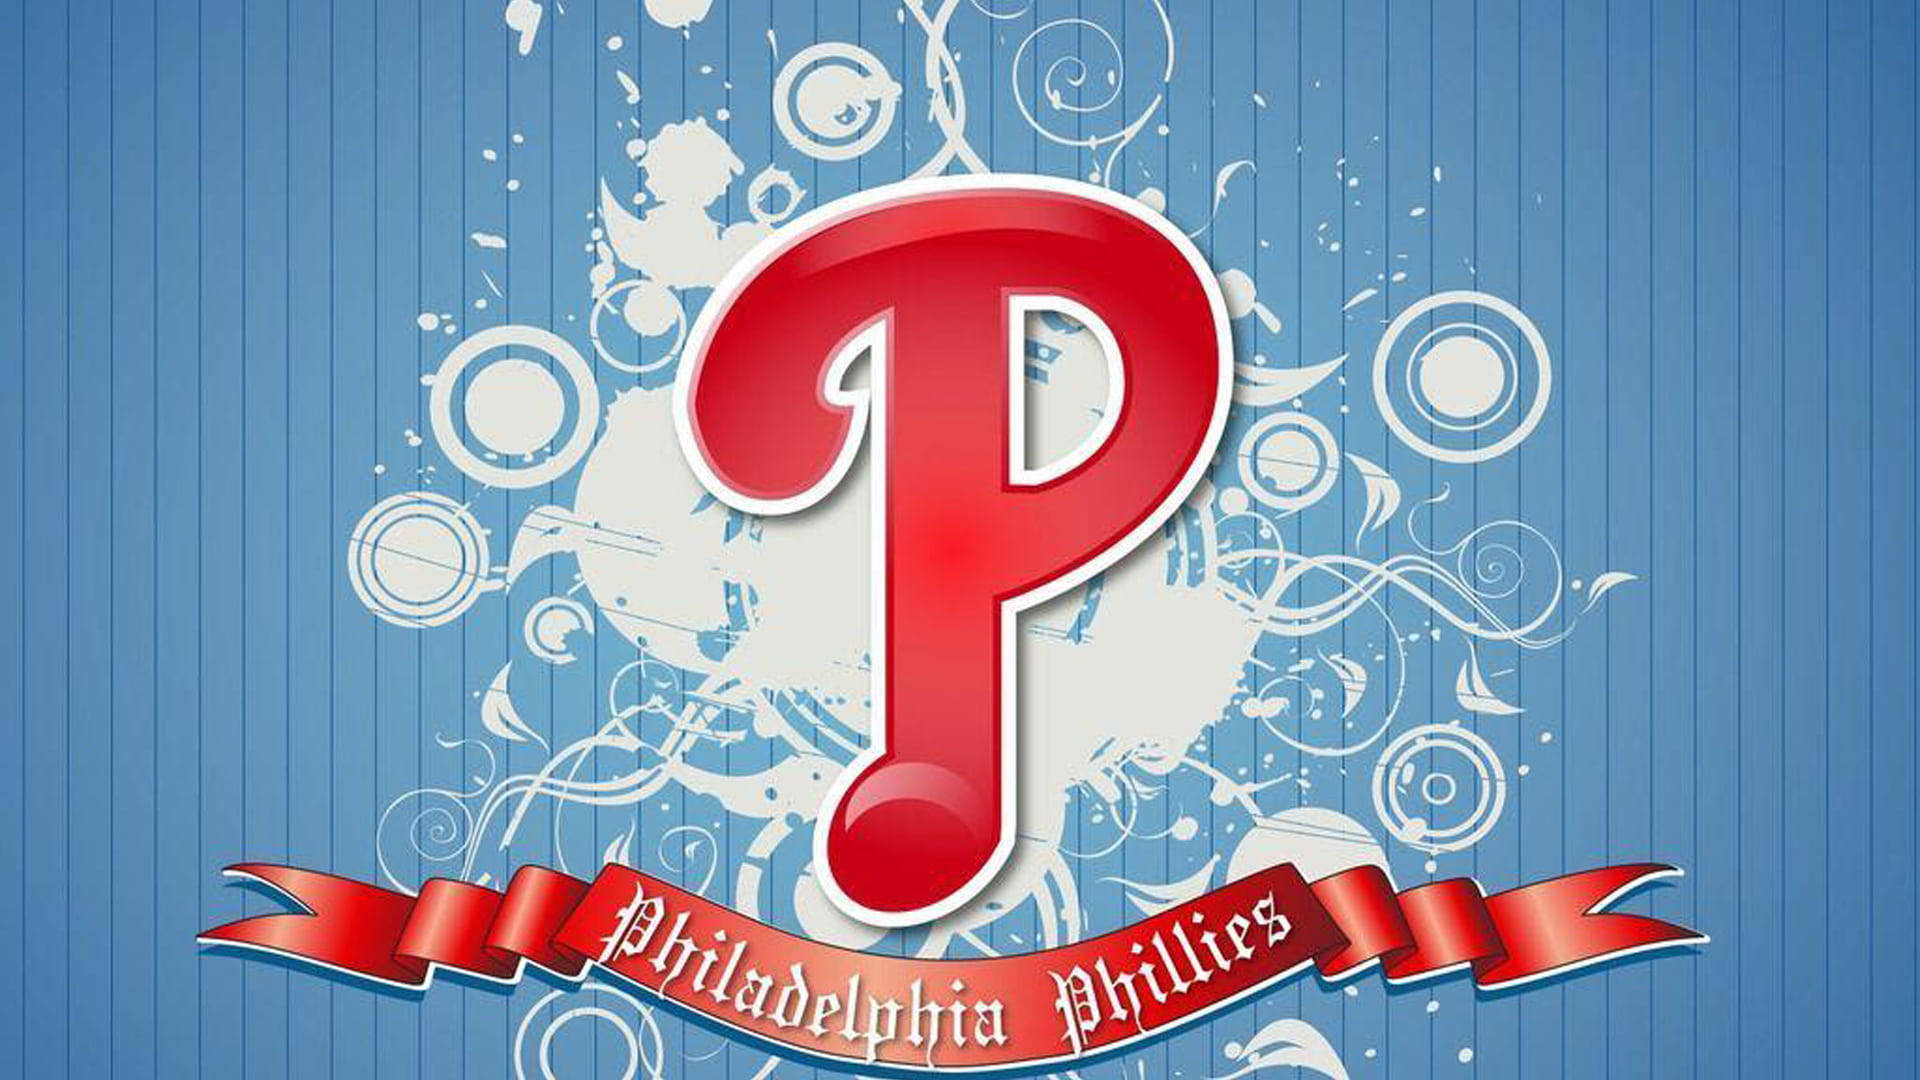 Letter P Philadelphia